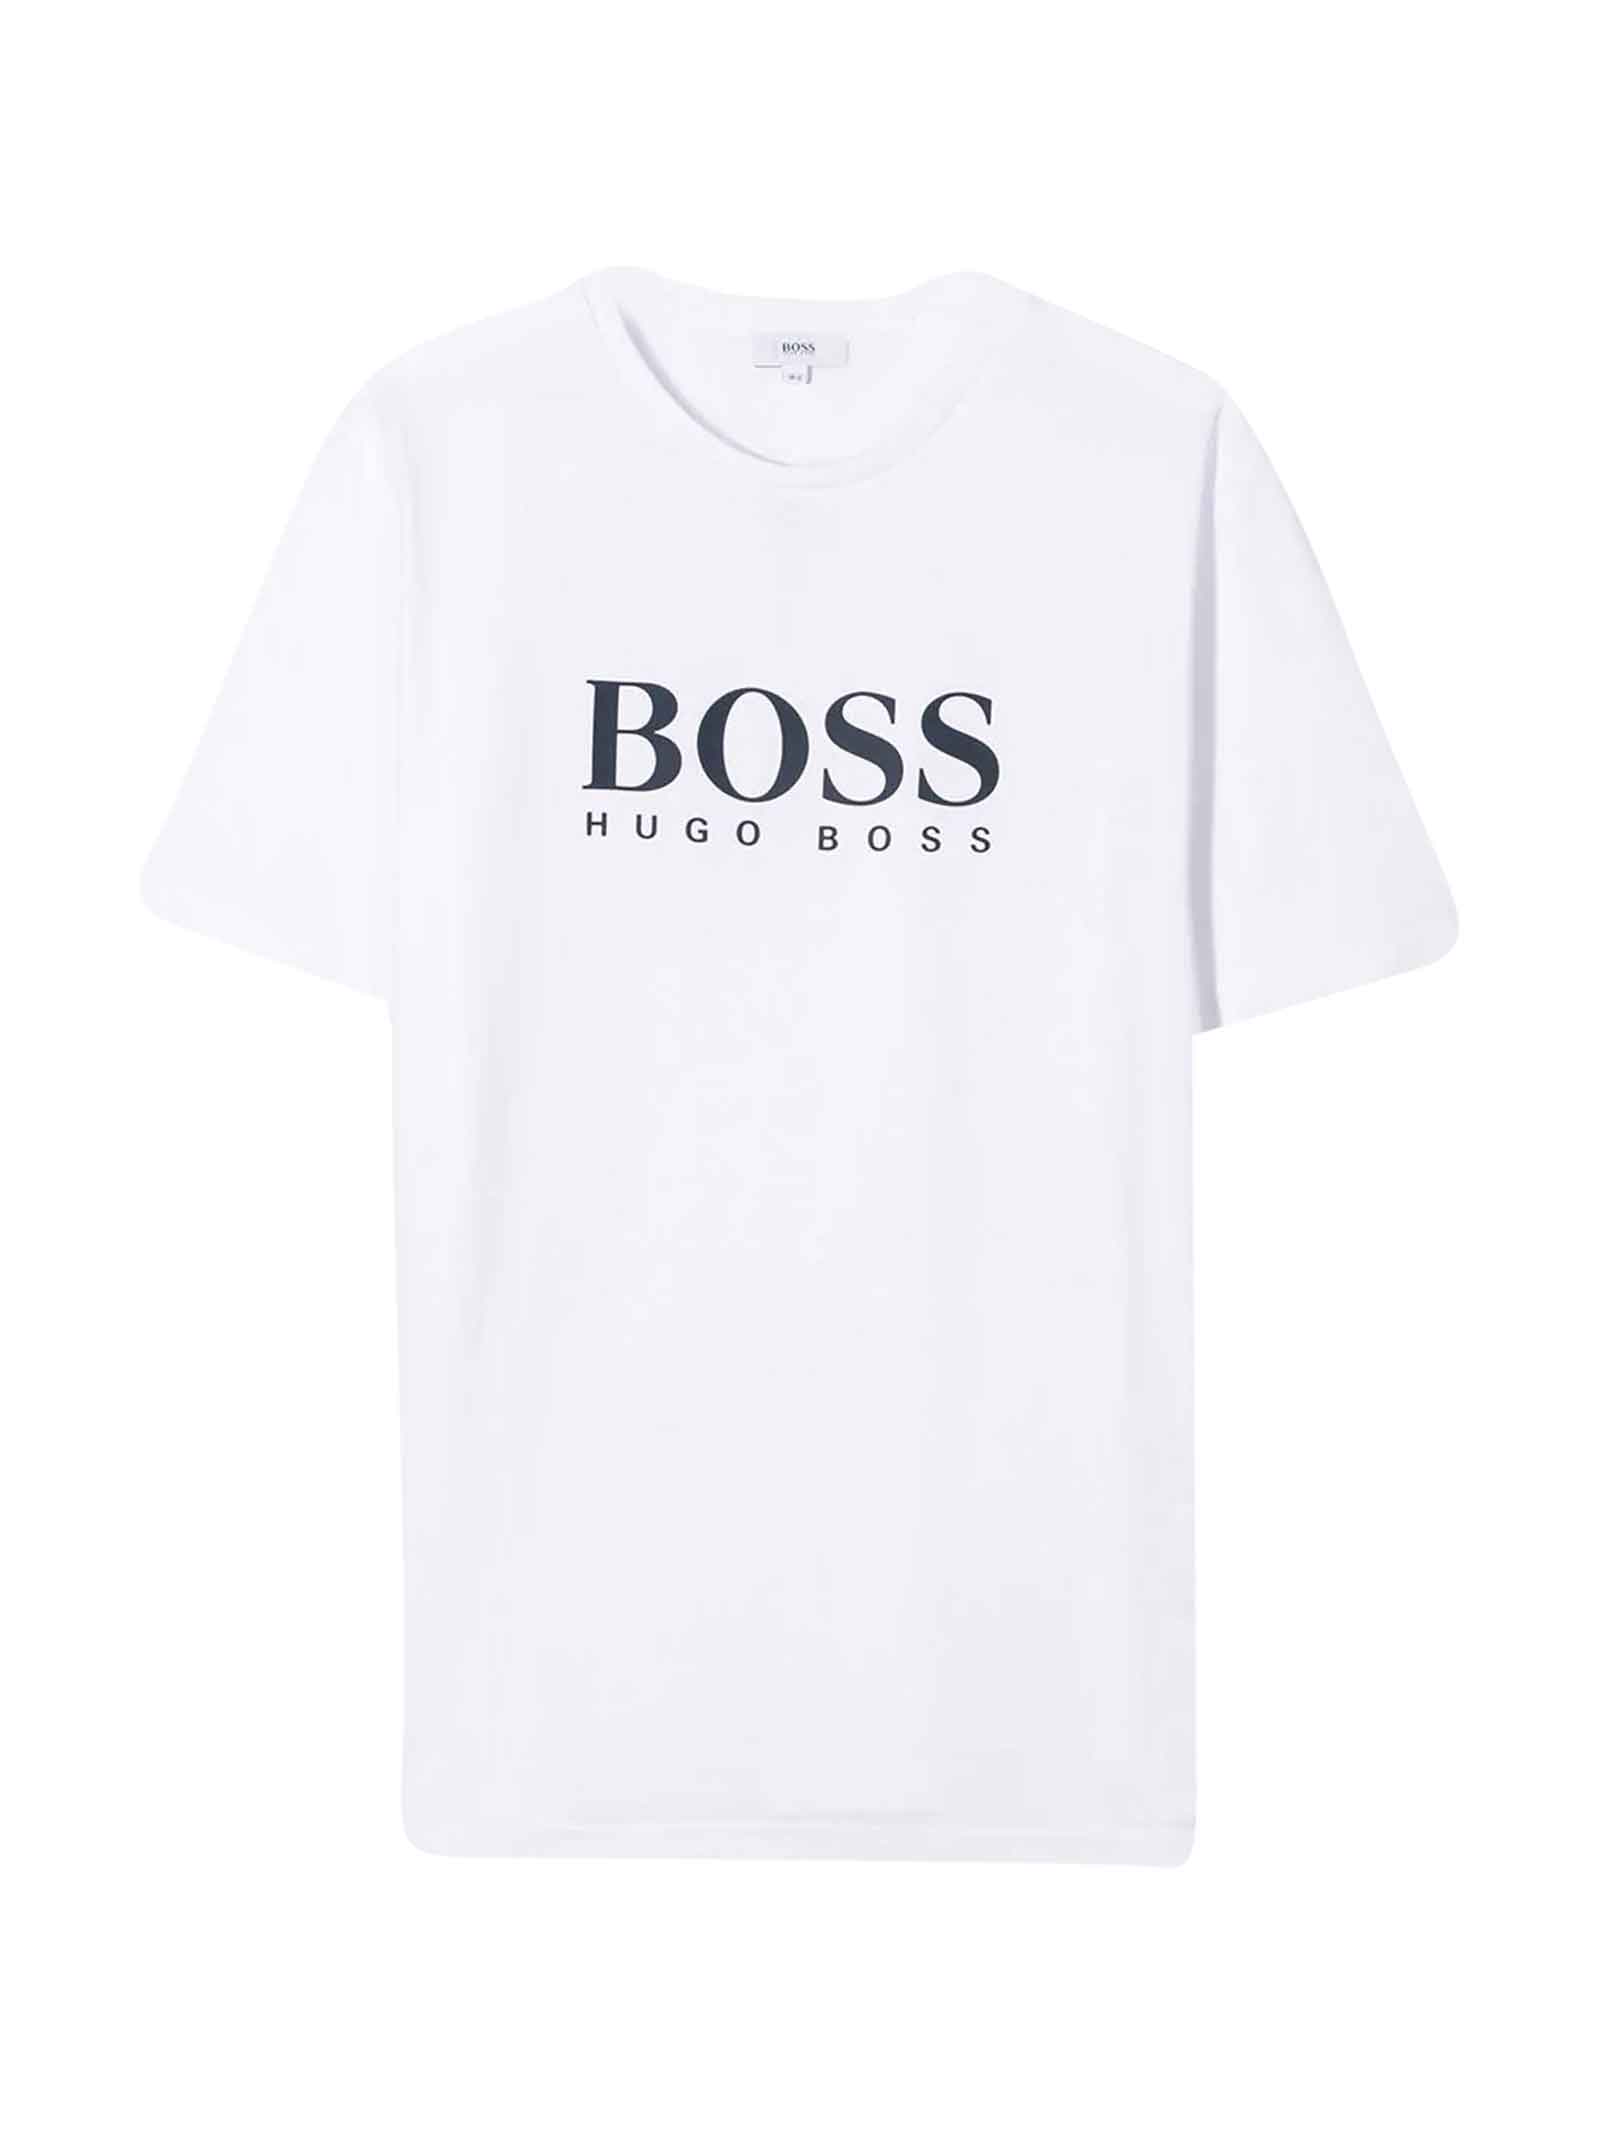 hugo boss t-shirt men's sale